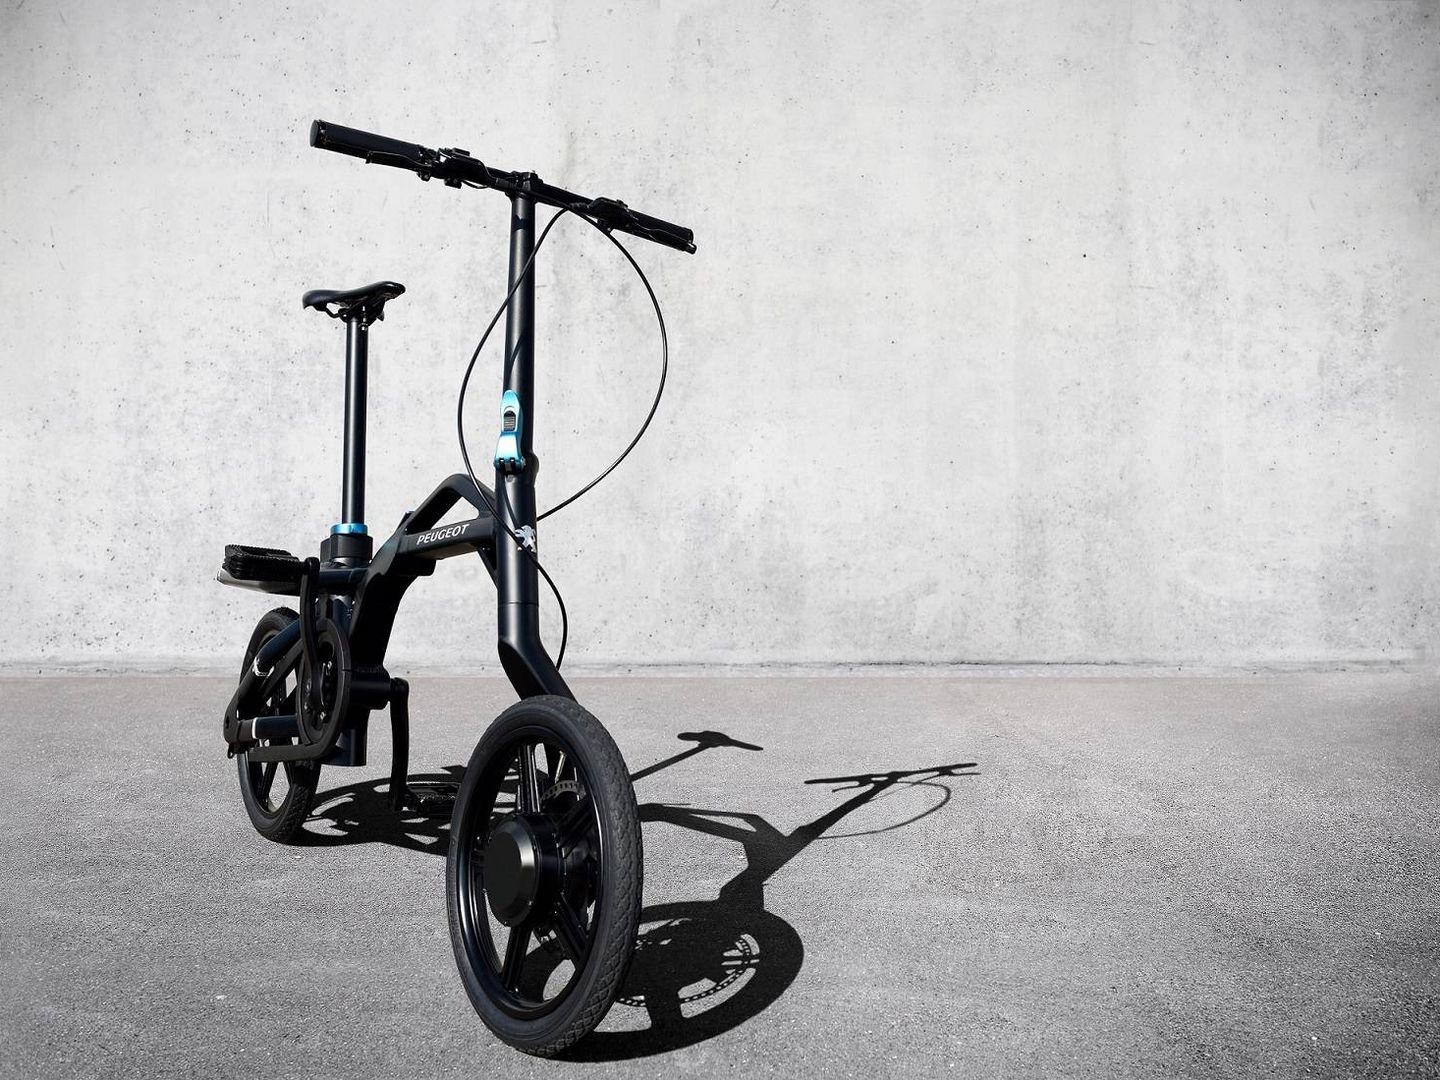 Las bicicletas eléctricas puedes alquilarlas por la calle o tener una propia.